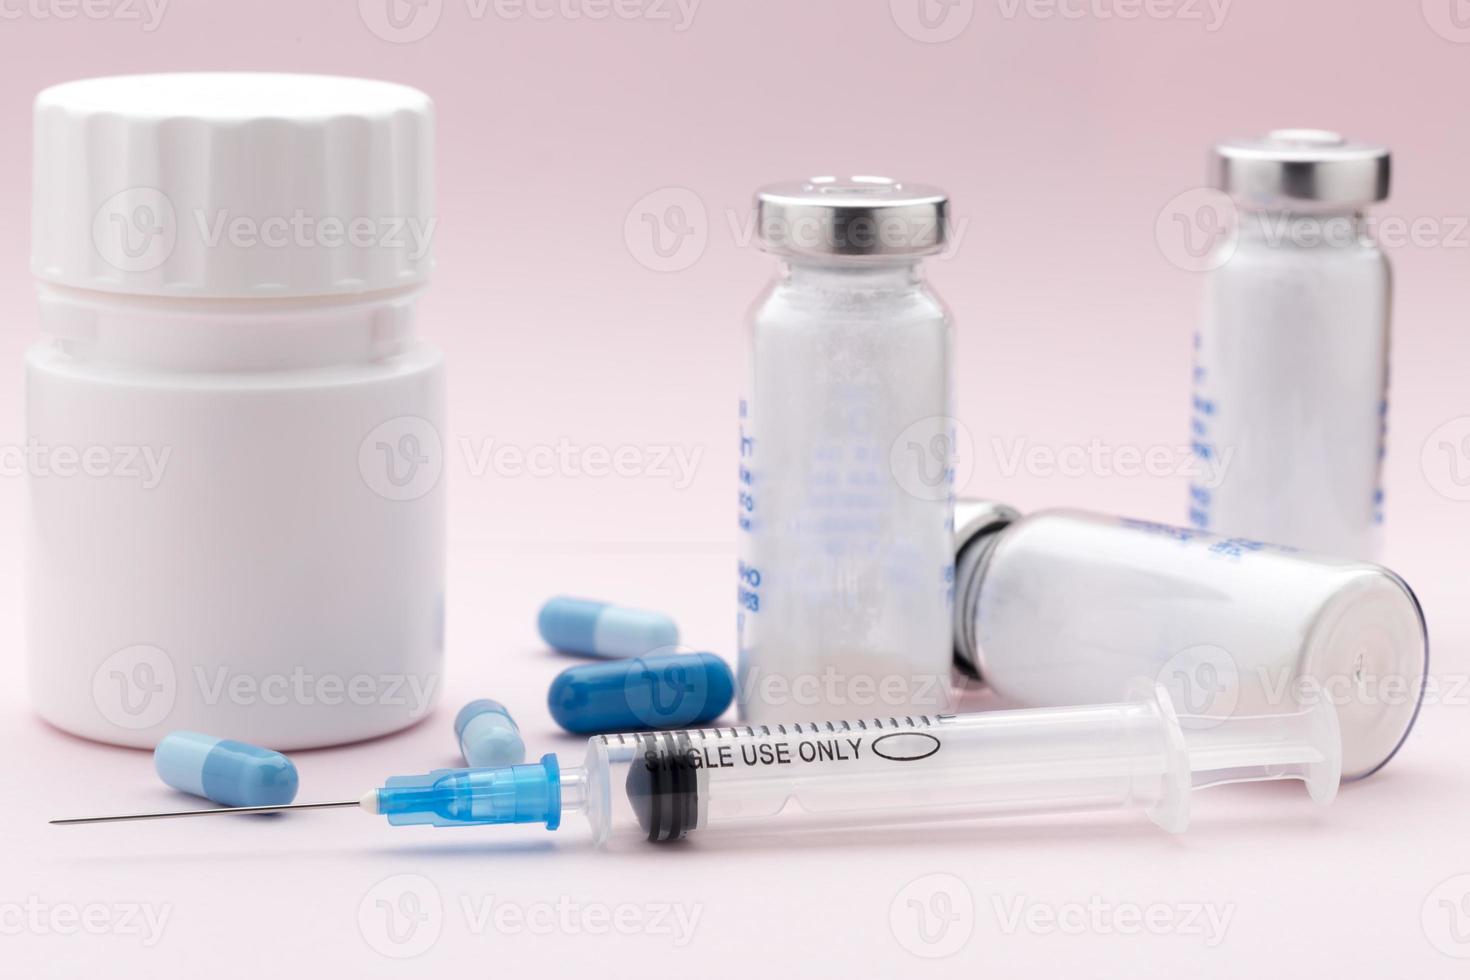 l'ensemble des flacons de médicaments, des pilules bleues et de la seringue d'injection photo